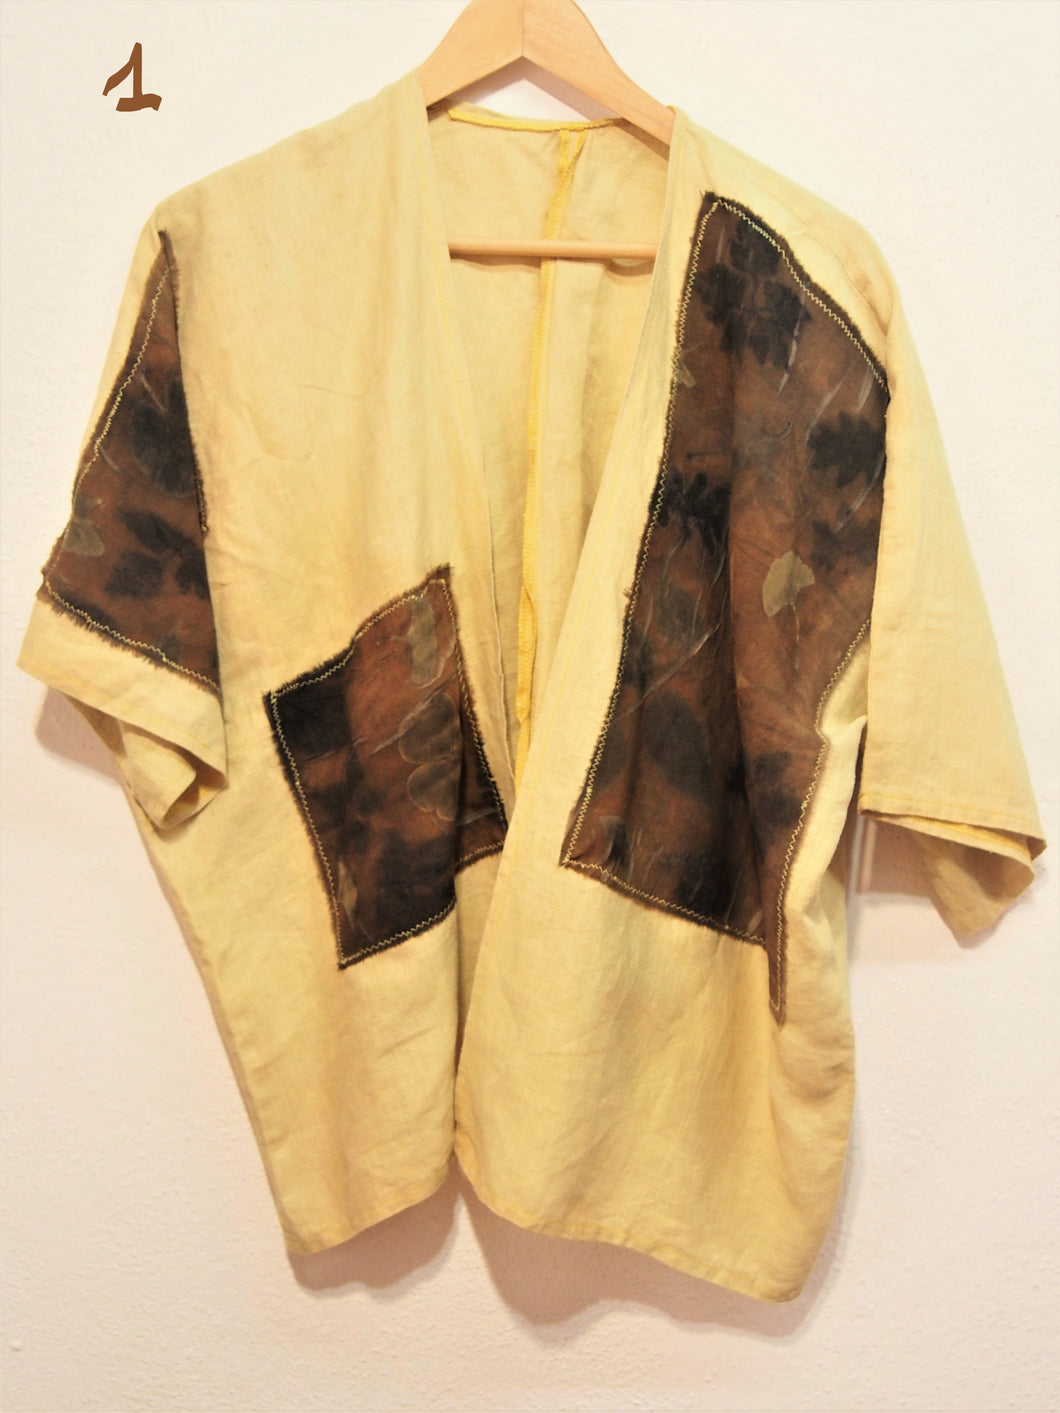 Kimono aus 100 % Leinen mit Ökodruck, Einzelstück, natürlich gefärbt